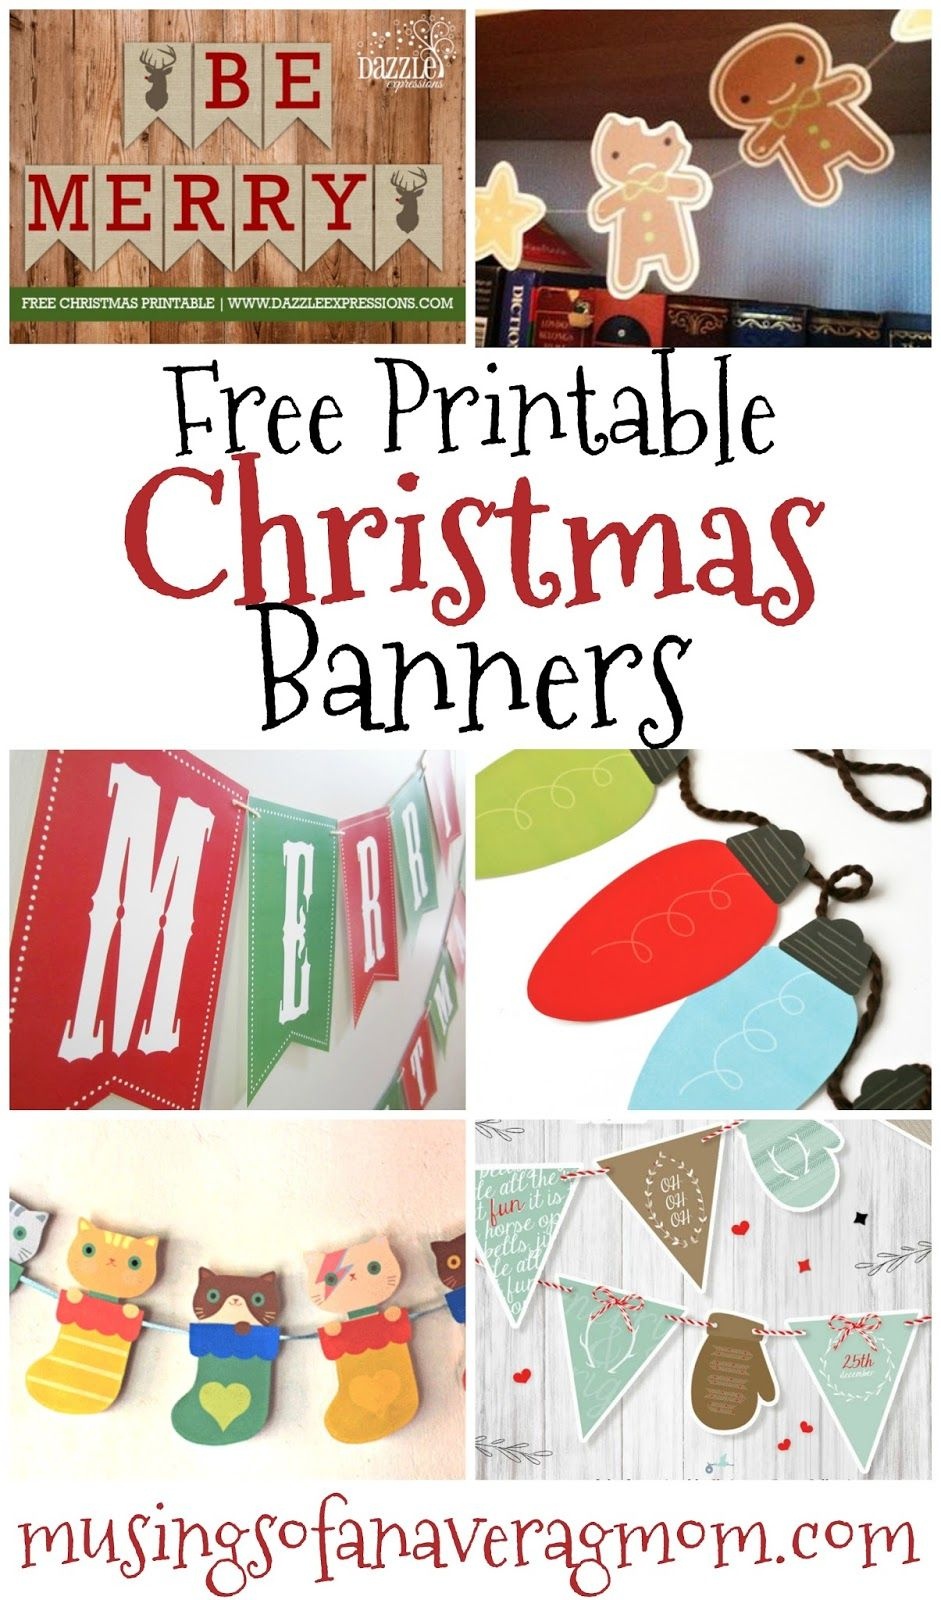 Free Printable Christmas Banners | Banner Letters | Free Christmas - Free Printable Christmas Decorations